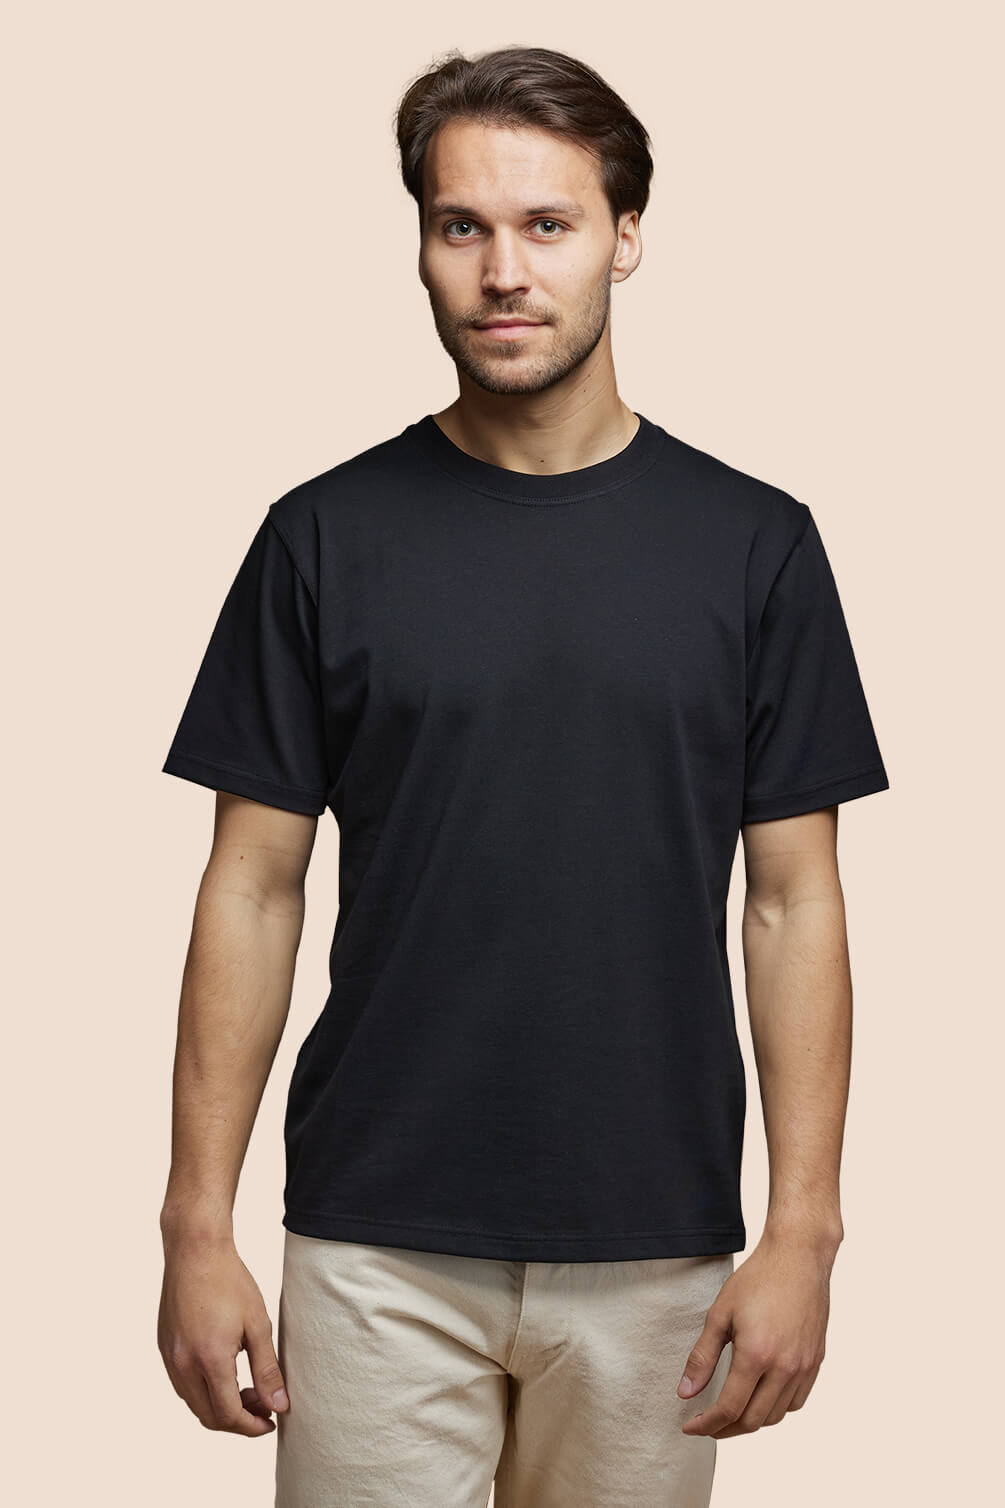 Pétrone T-shirt manches courtes coton pima micromodal noir homme